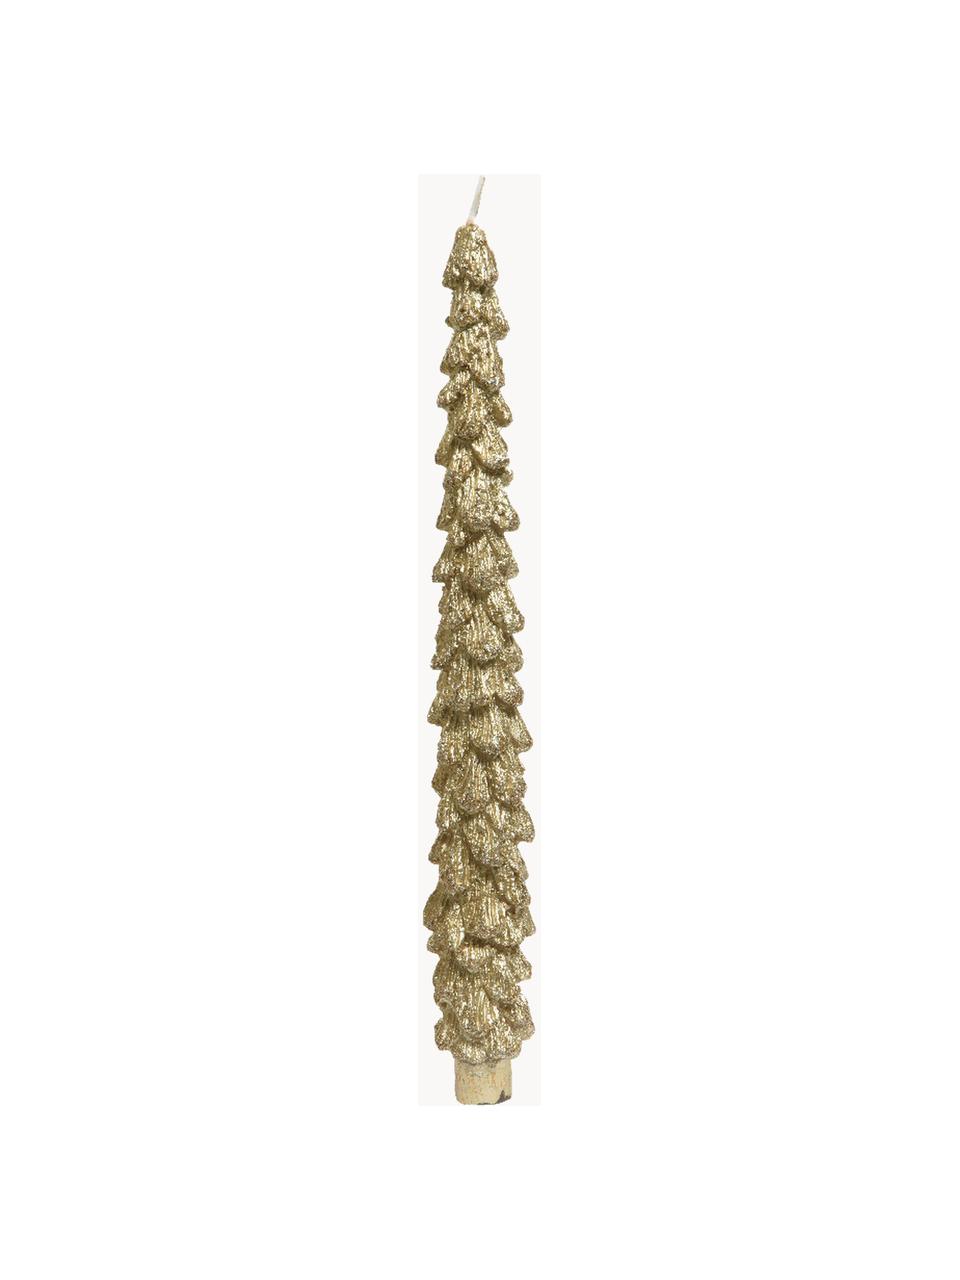 Stabkerzen Monica in Tannenbaum-Form, 2 Stück, Wachs, Goldfarben, Ø 2 x H 26 cm